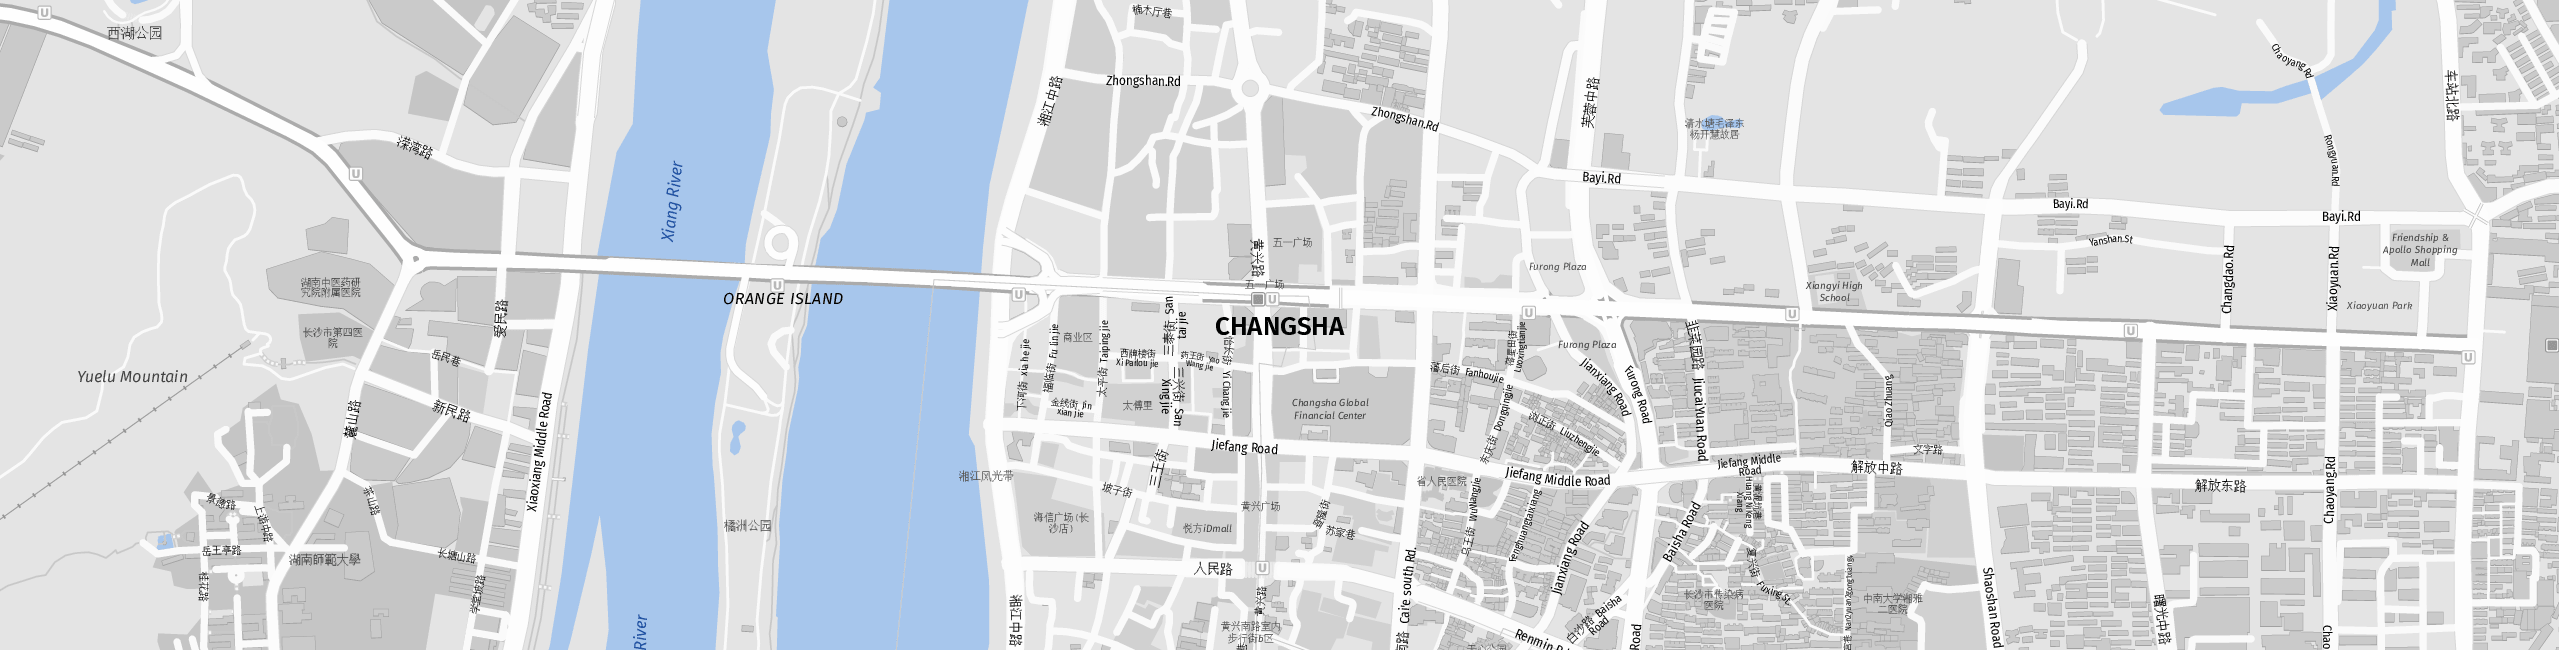 Stadtplan Changsha zum Downloaden.